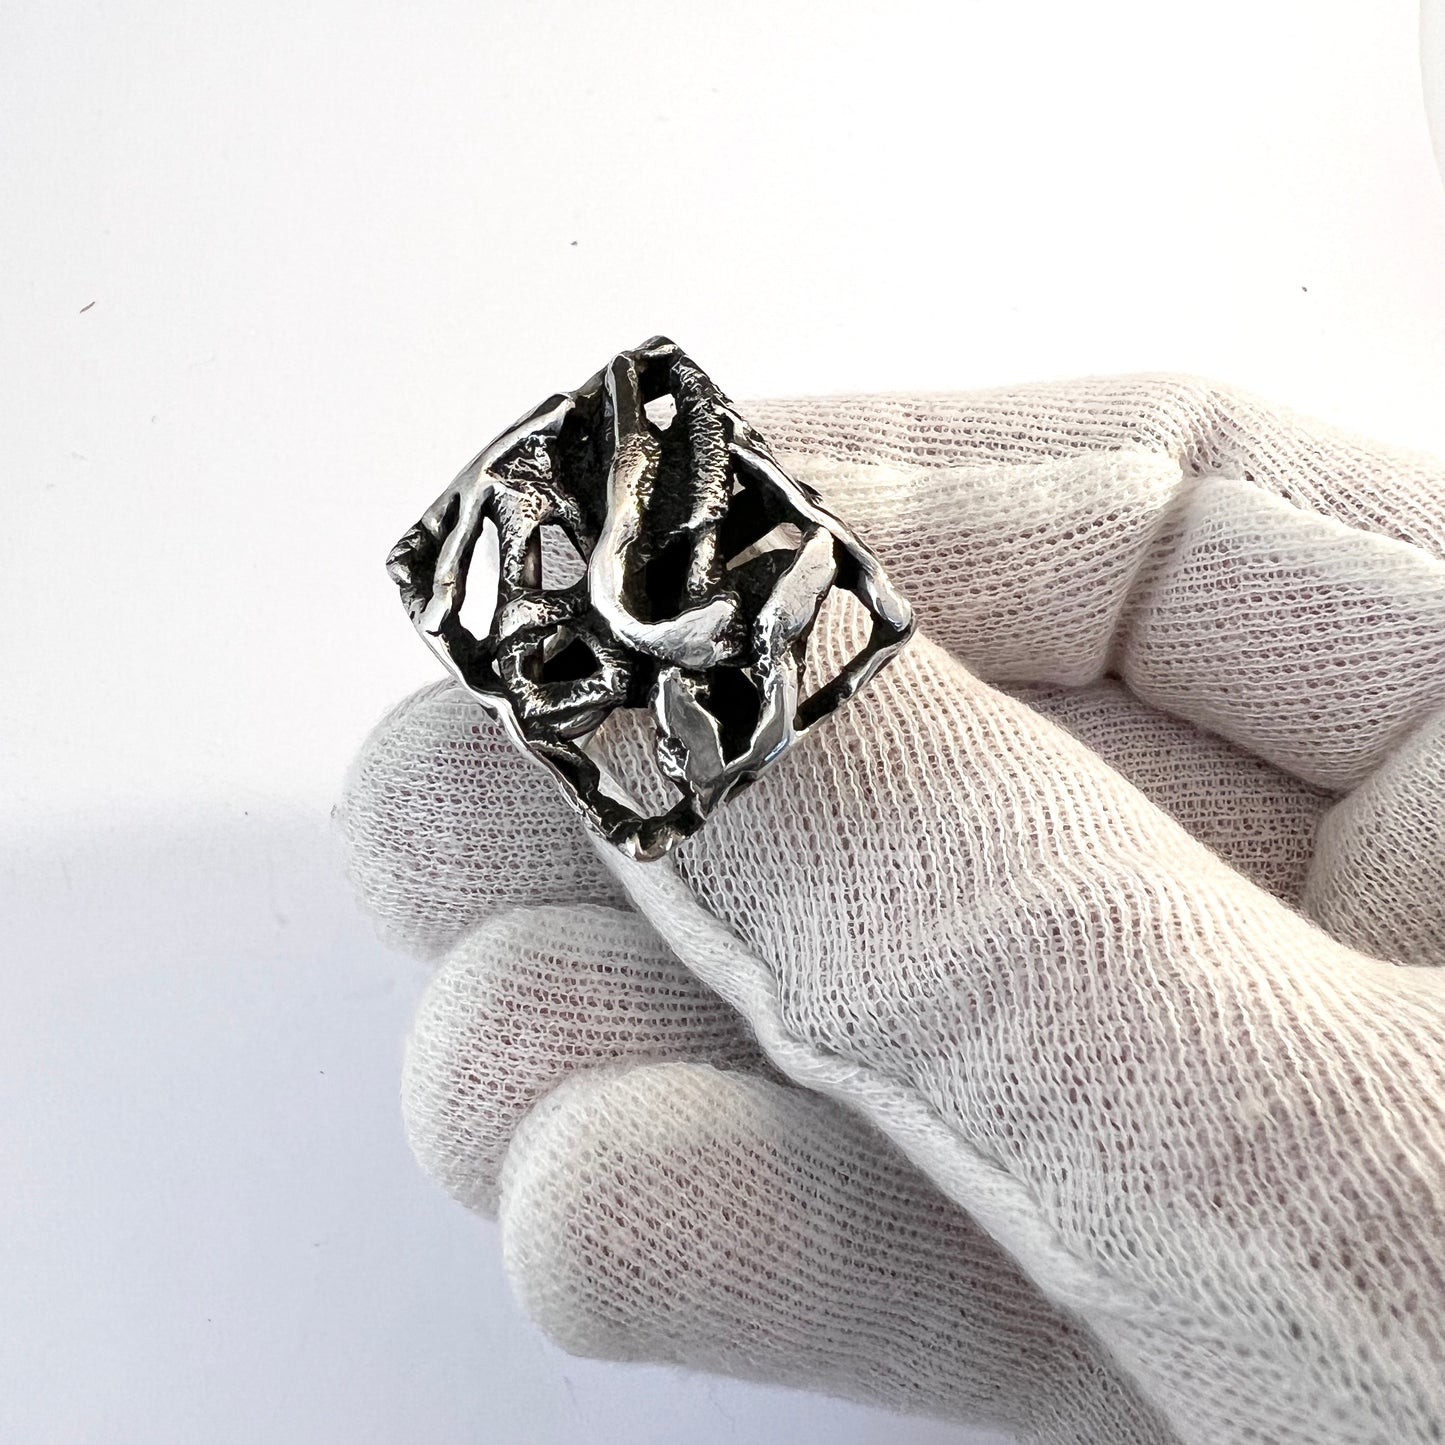 Iceland, Vintage 1970s. Modernist Solid Silver Ring. Maker's Mark.